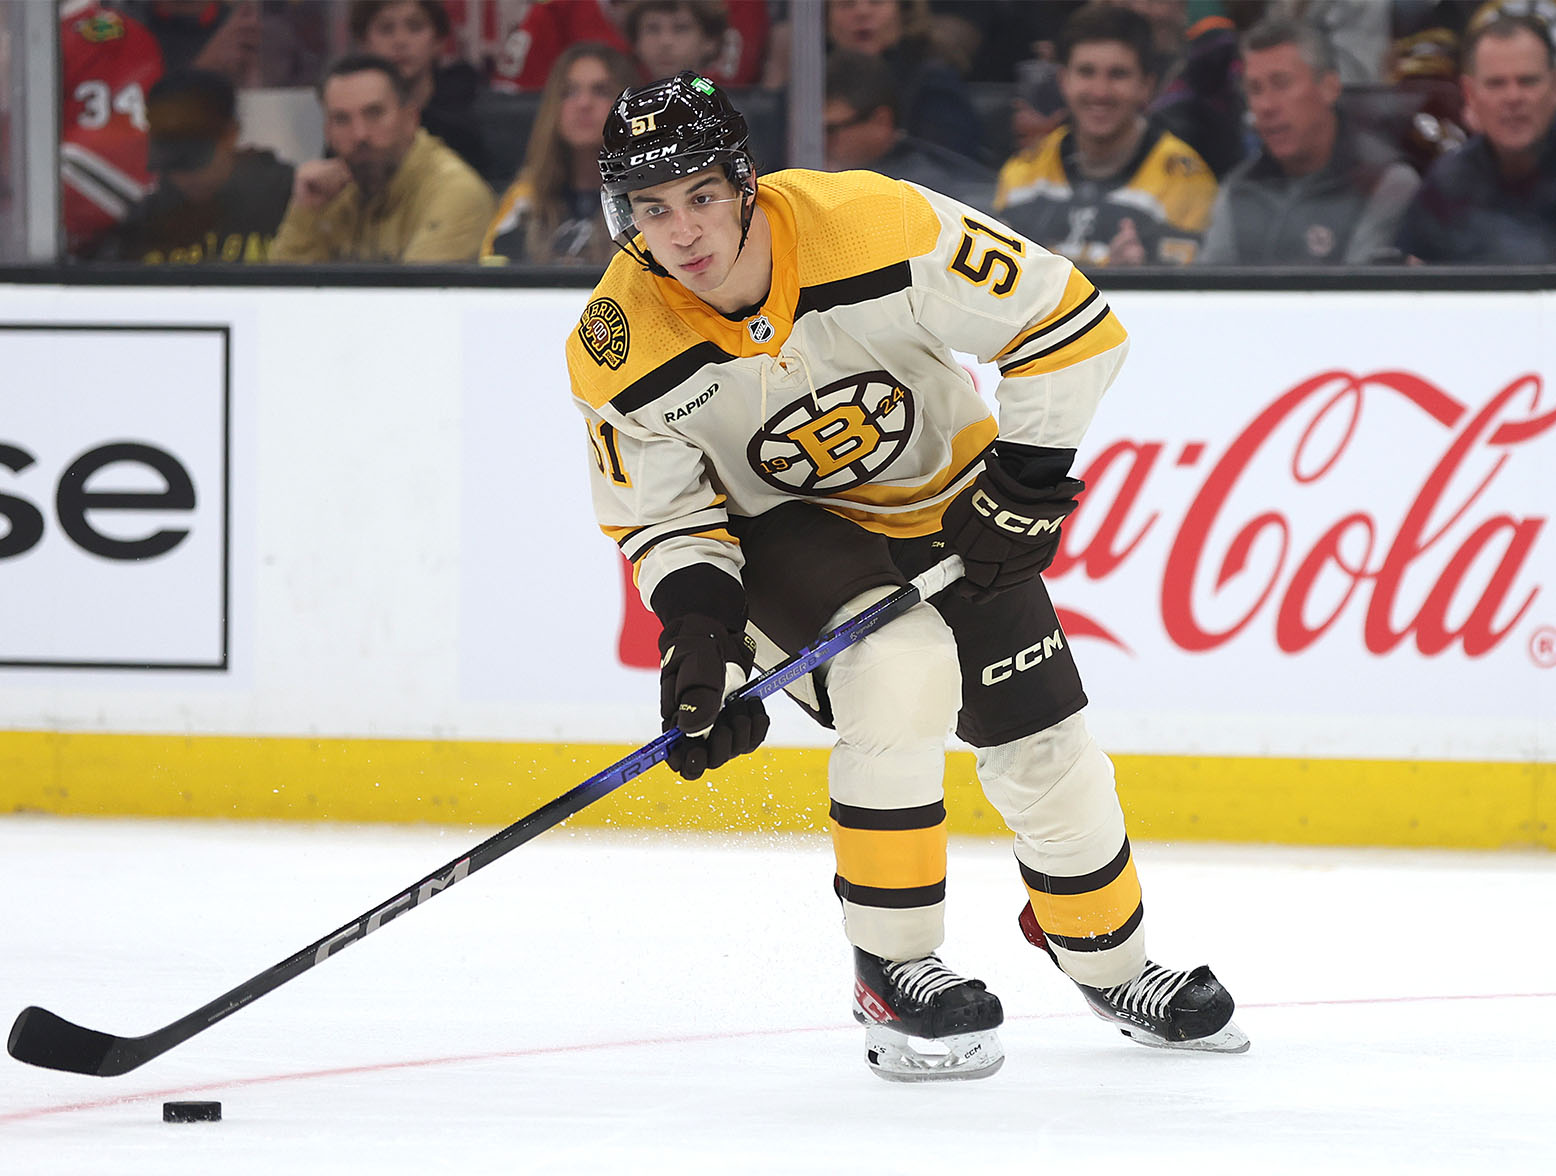 Matthew Poitras, Johnny Beecher Flash Potential In Bruins Debuts